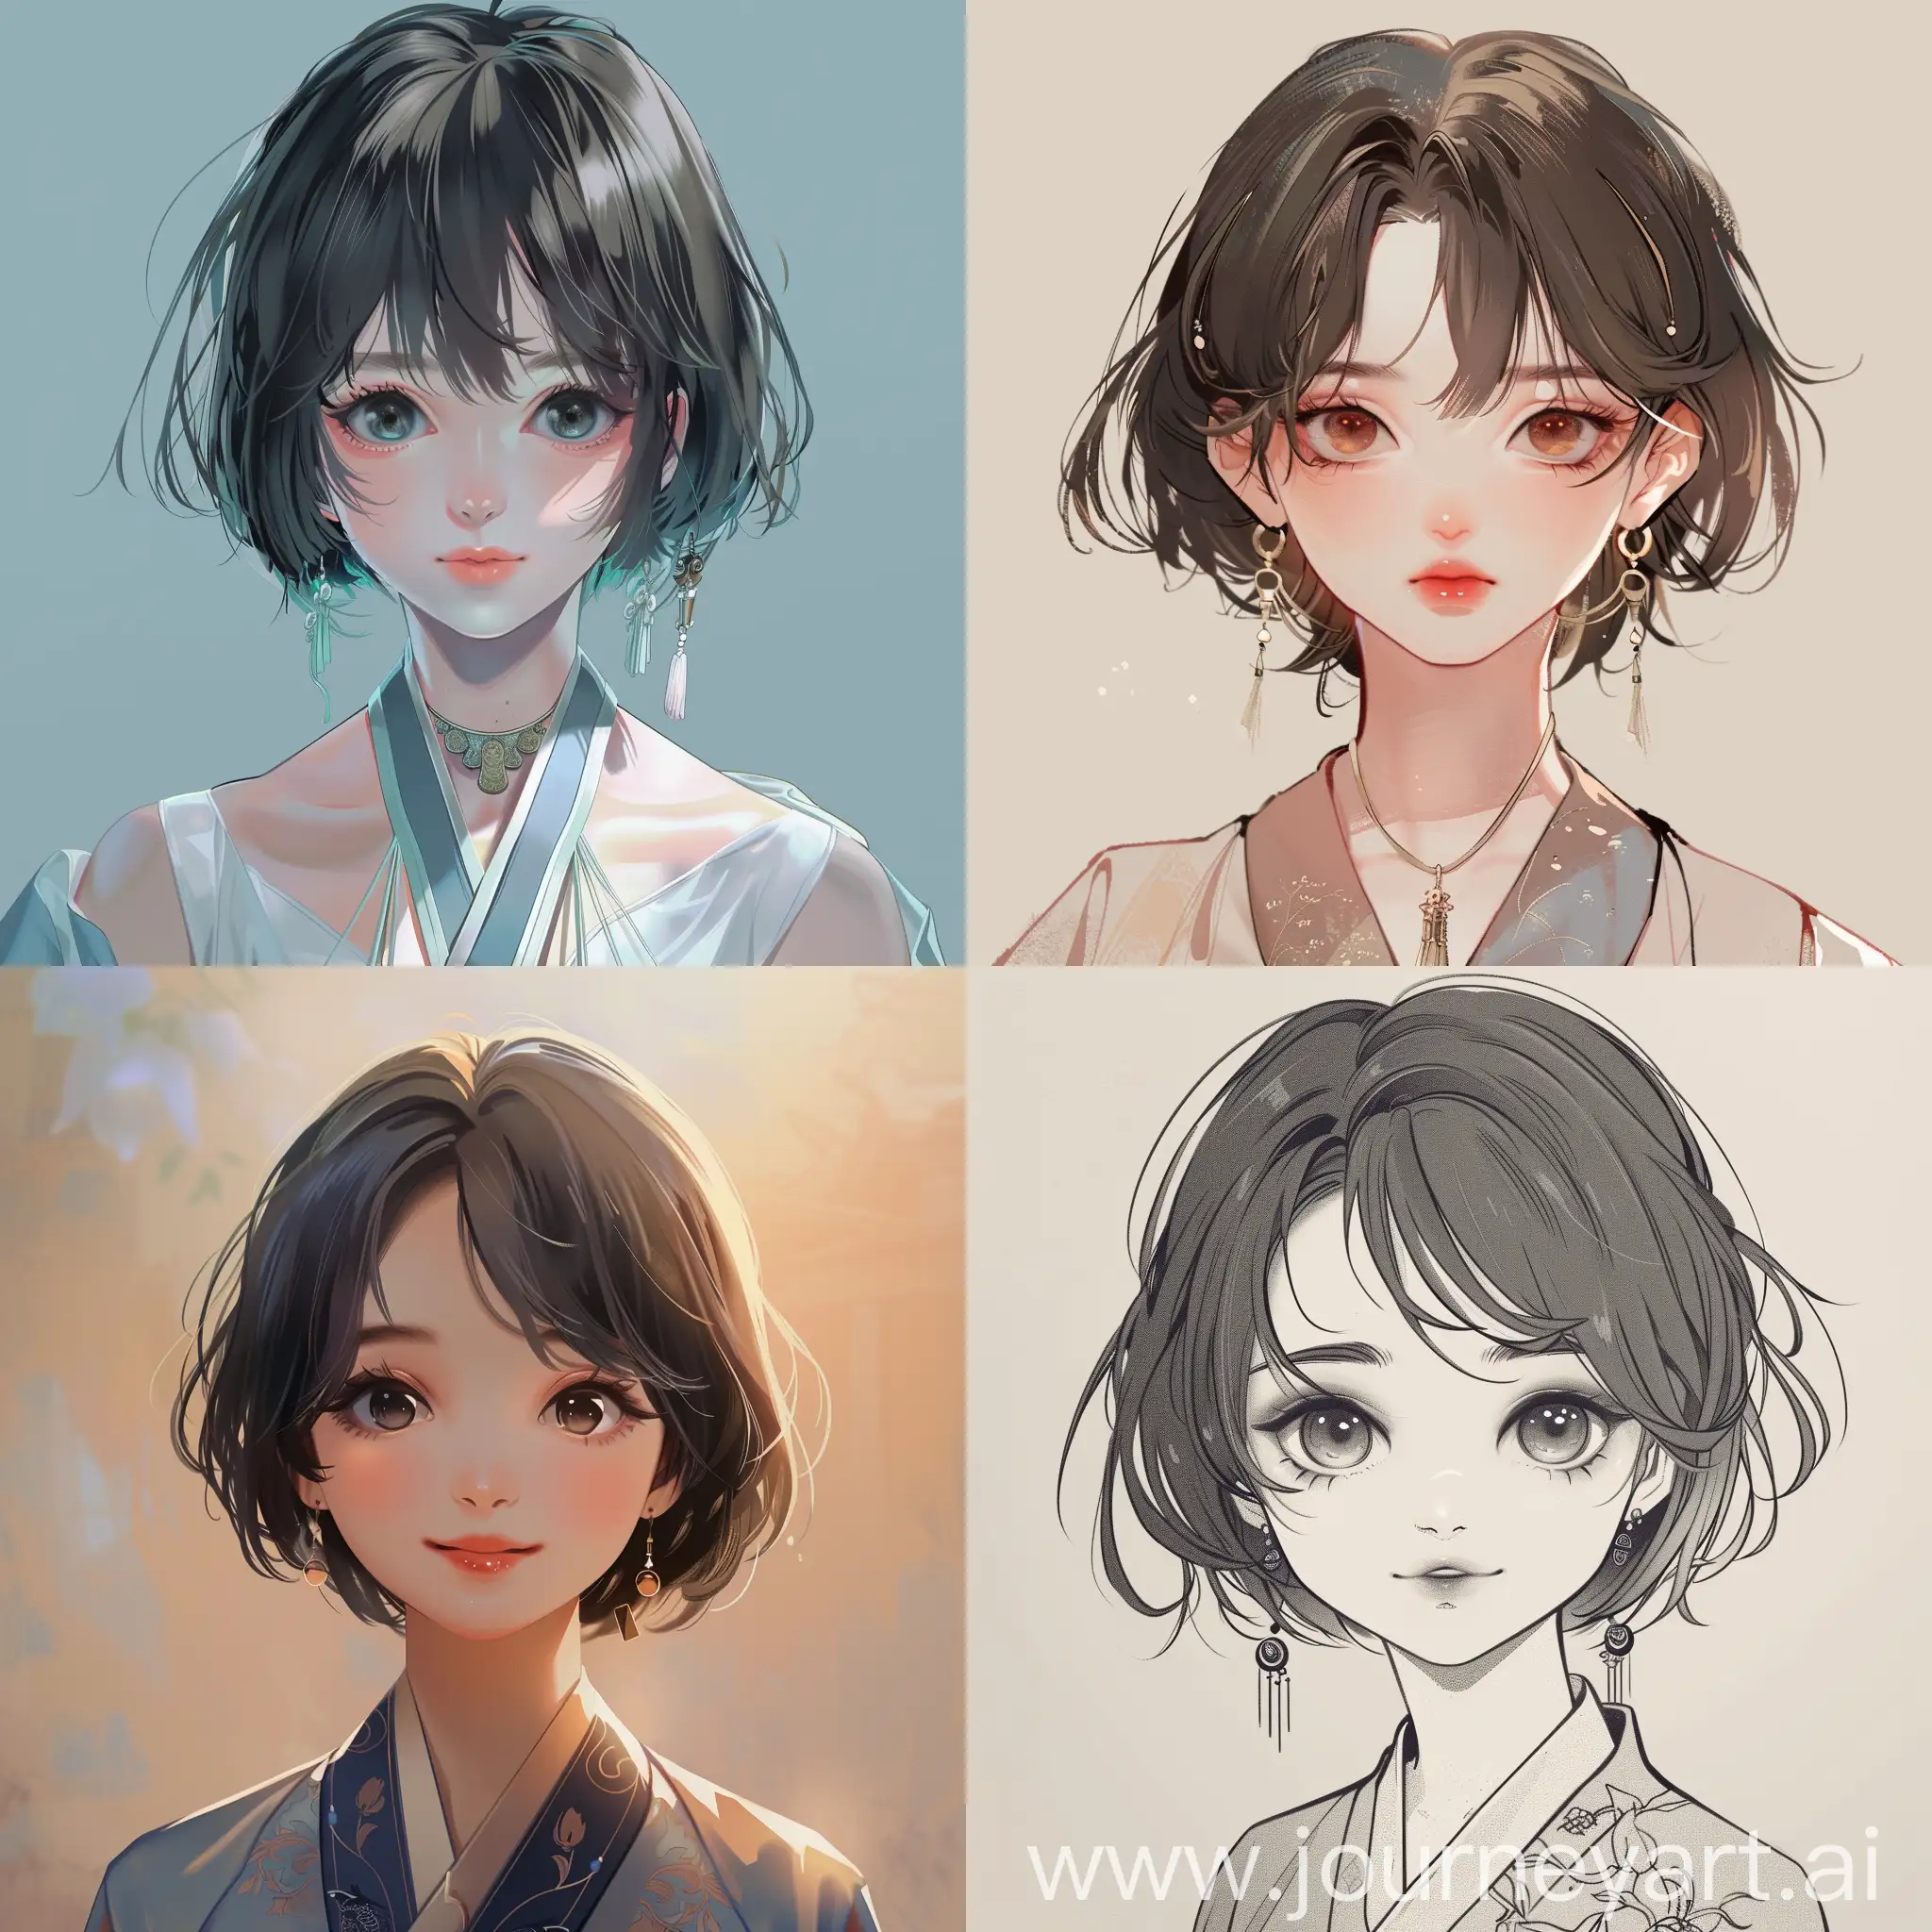 帮我生成一个中国古风动漫头像，是个美丽的女生，短头发，眼睛大，性格开朗，朝鲜族